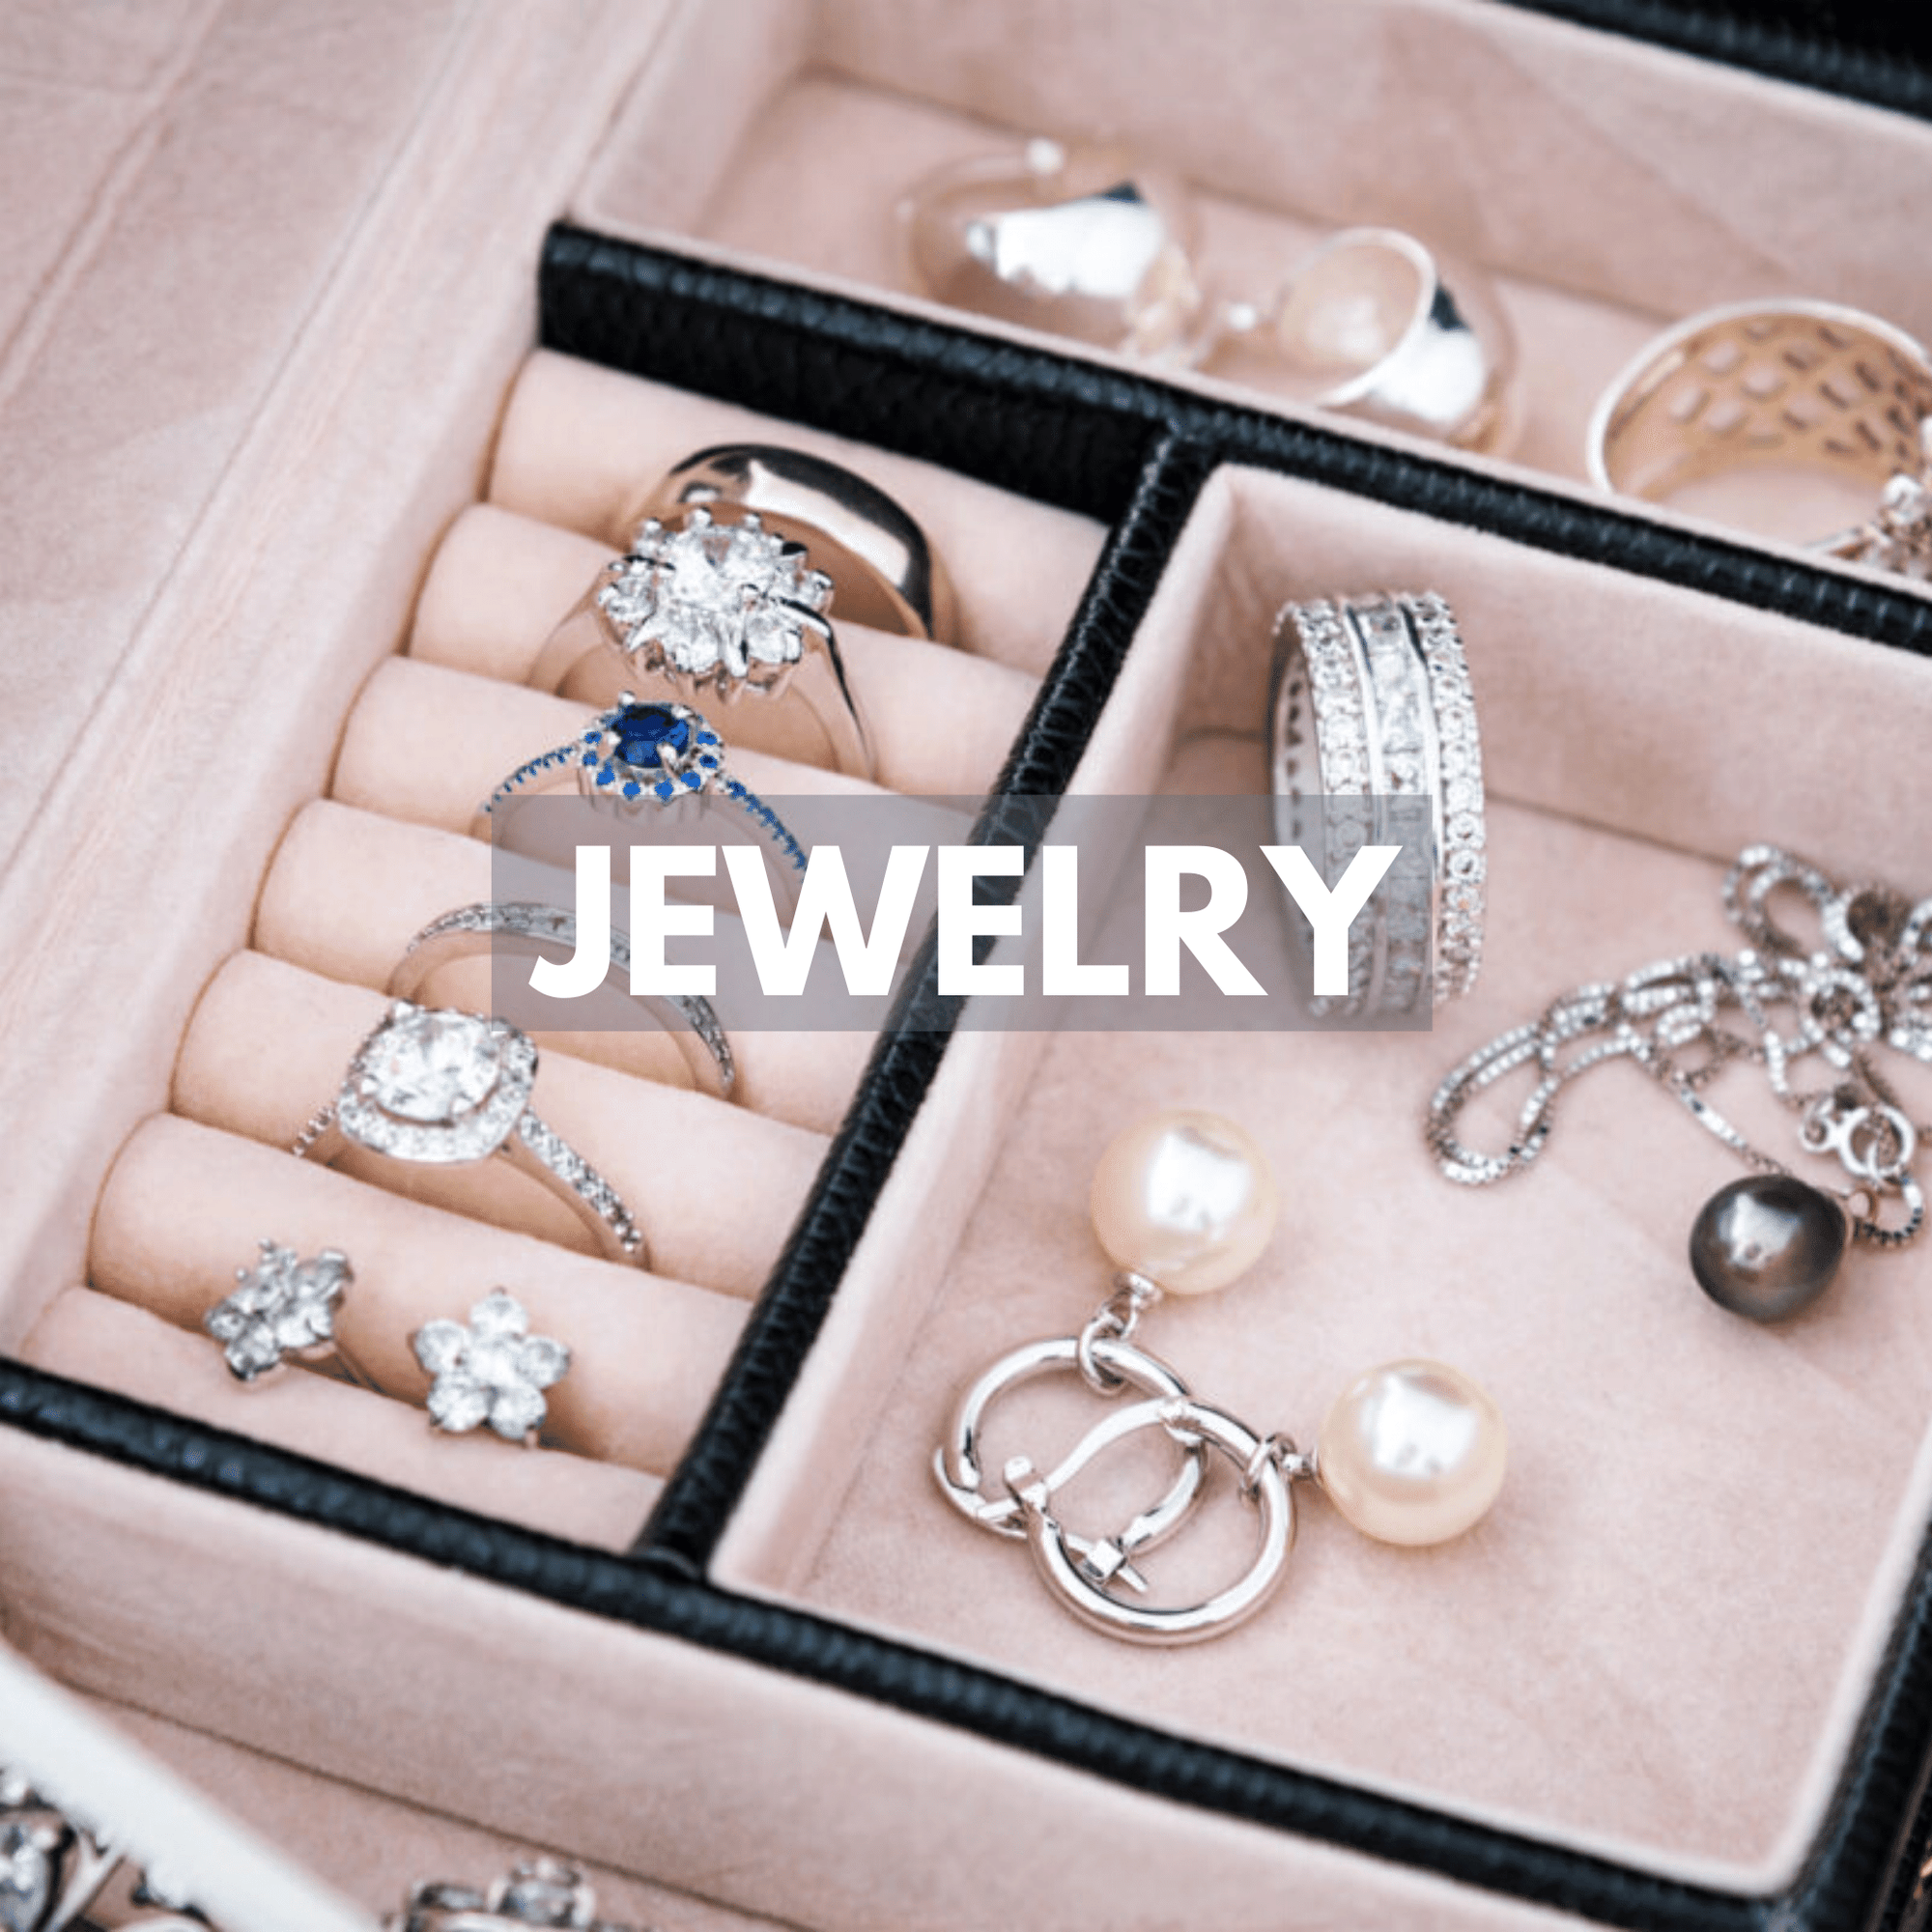 jewelry drawer with jewelry inside